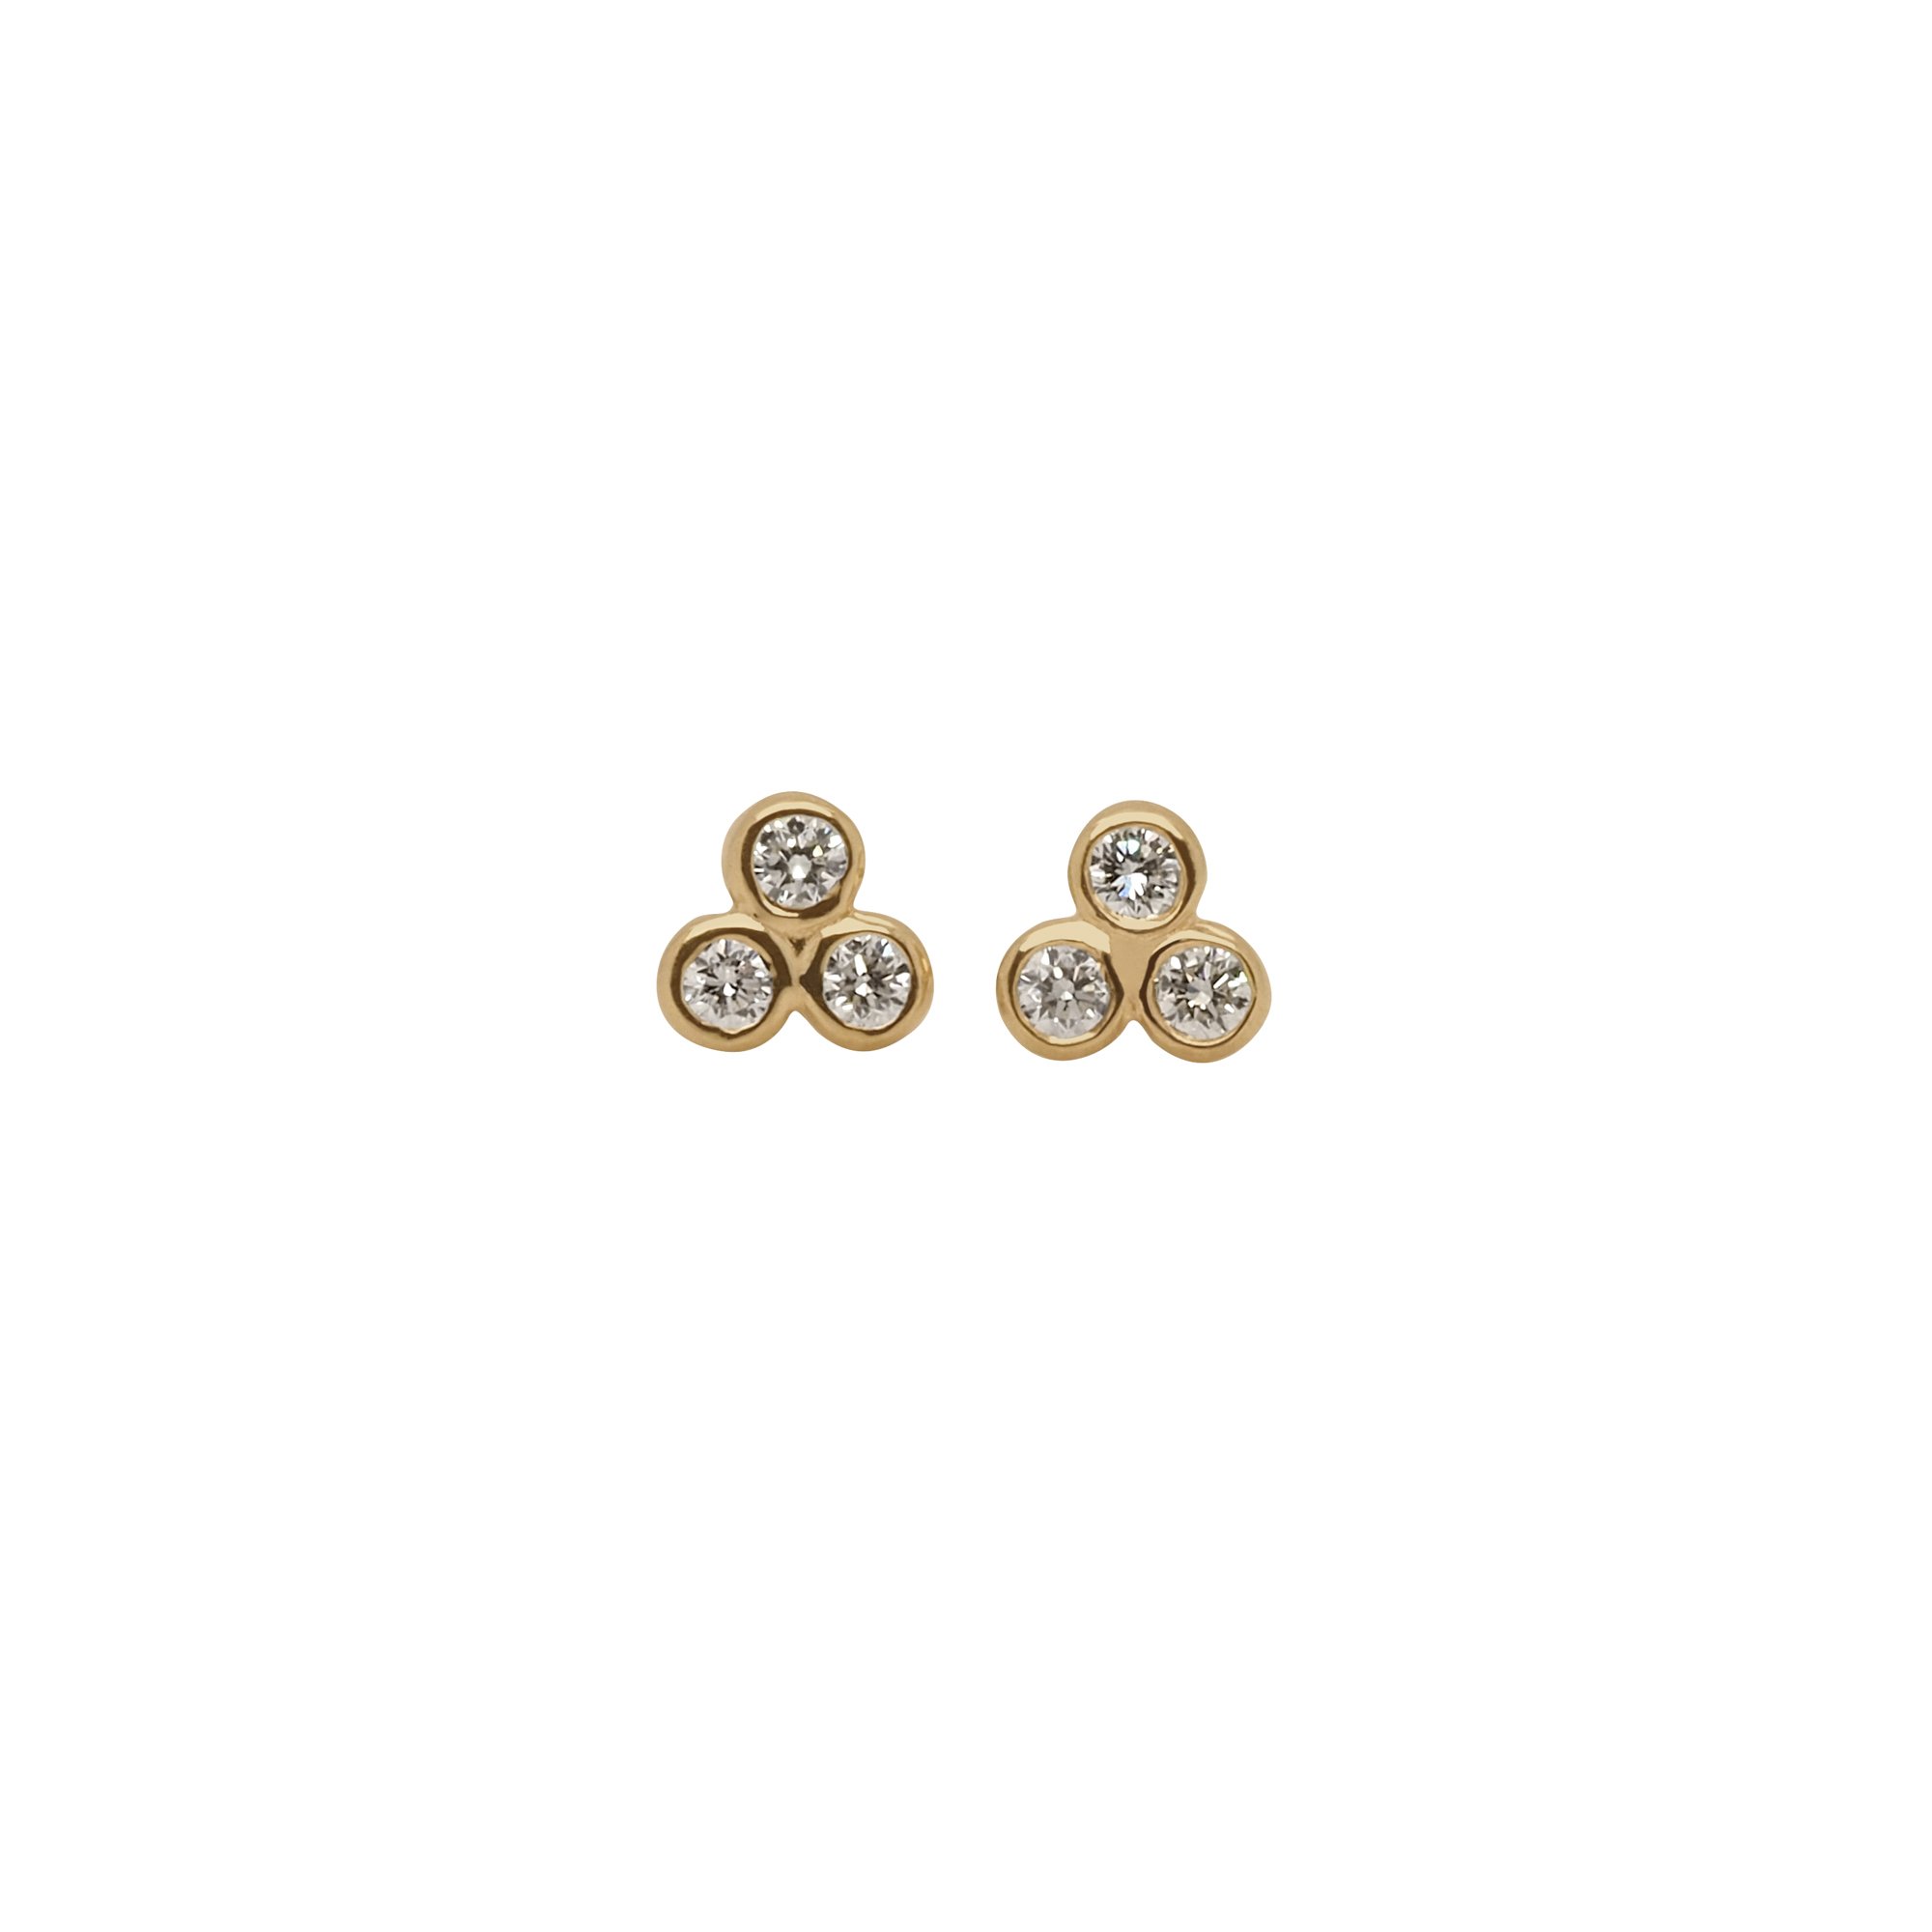 Buy Zeal Round Diamond Stud Earrings Online